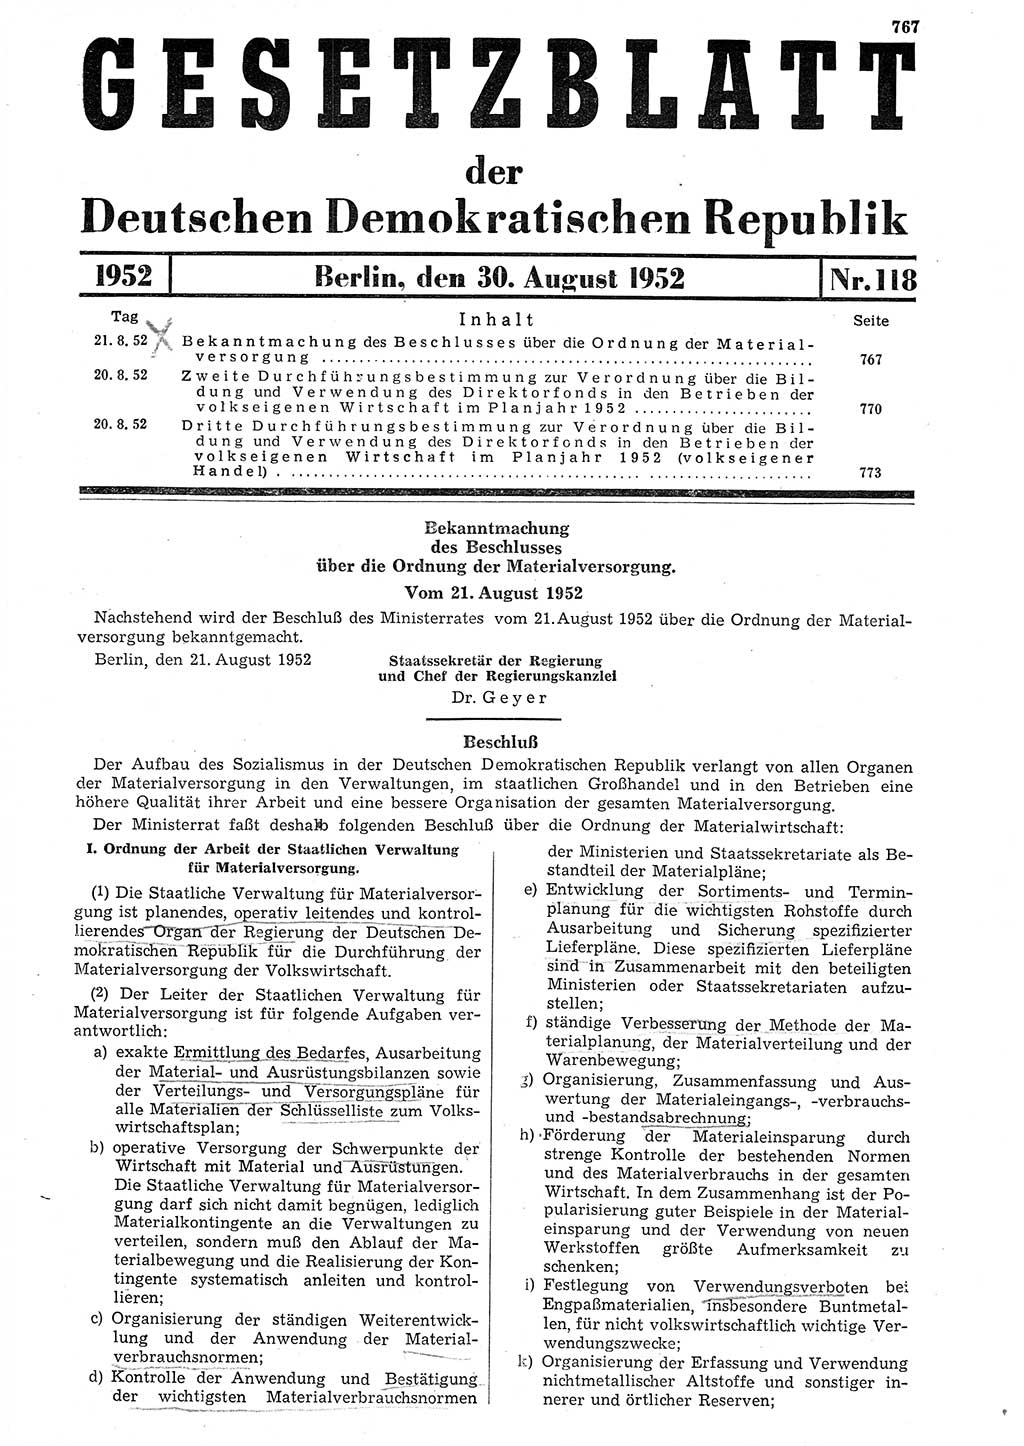 Gesetzblatt (GBl.) der Deutschen Demokratischen Republik (DDR) 1952, Seite 767 (GBl. DDR 1952, S. 767)